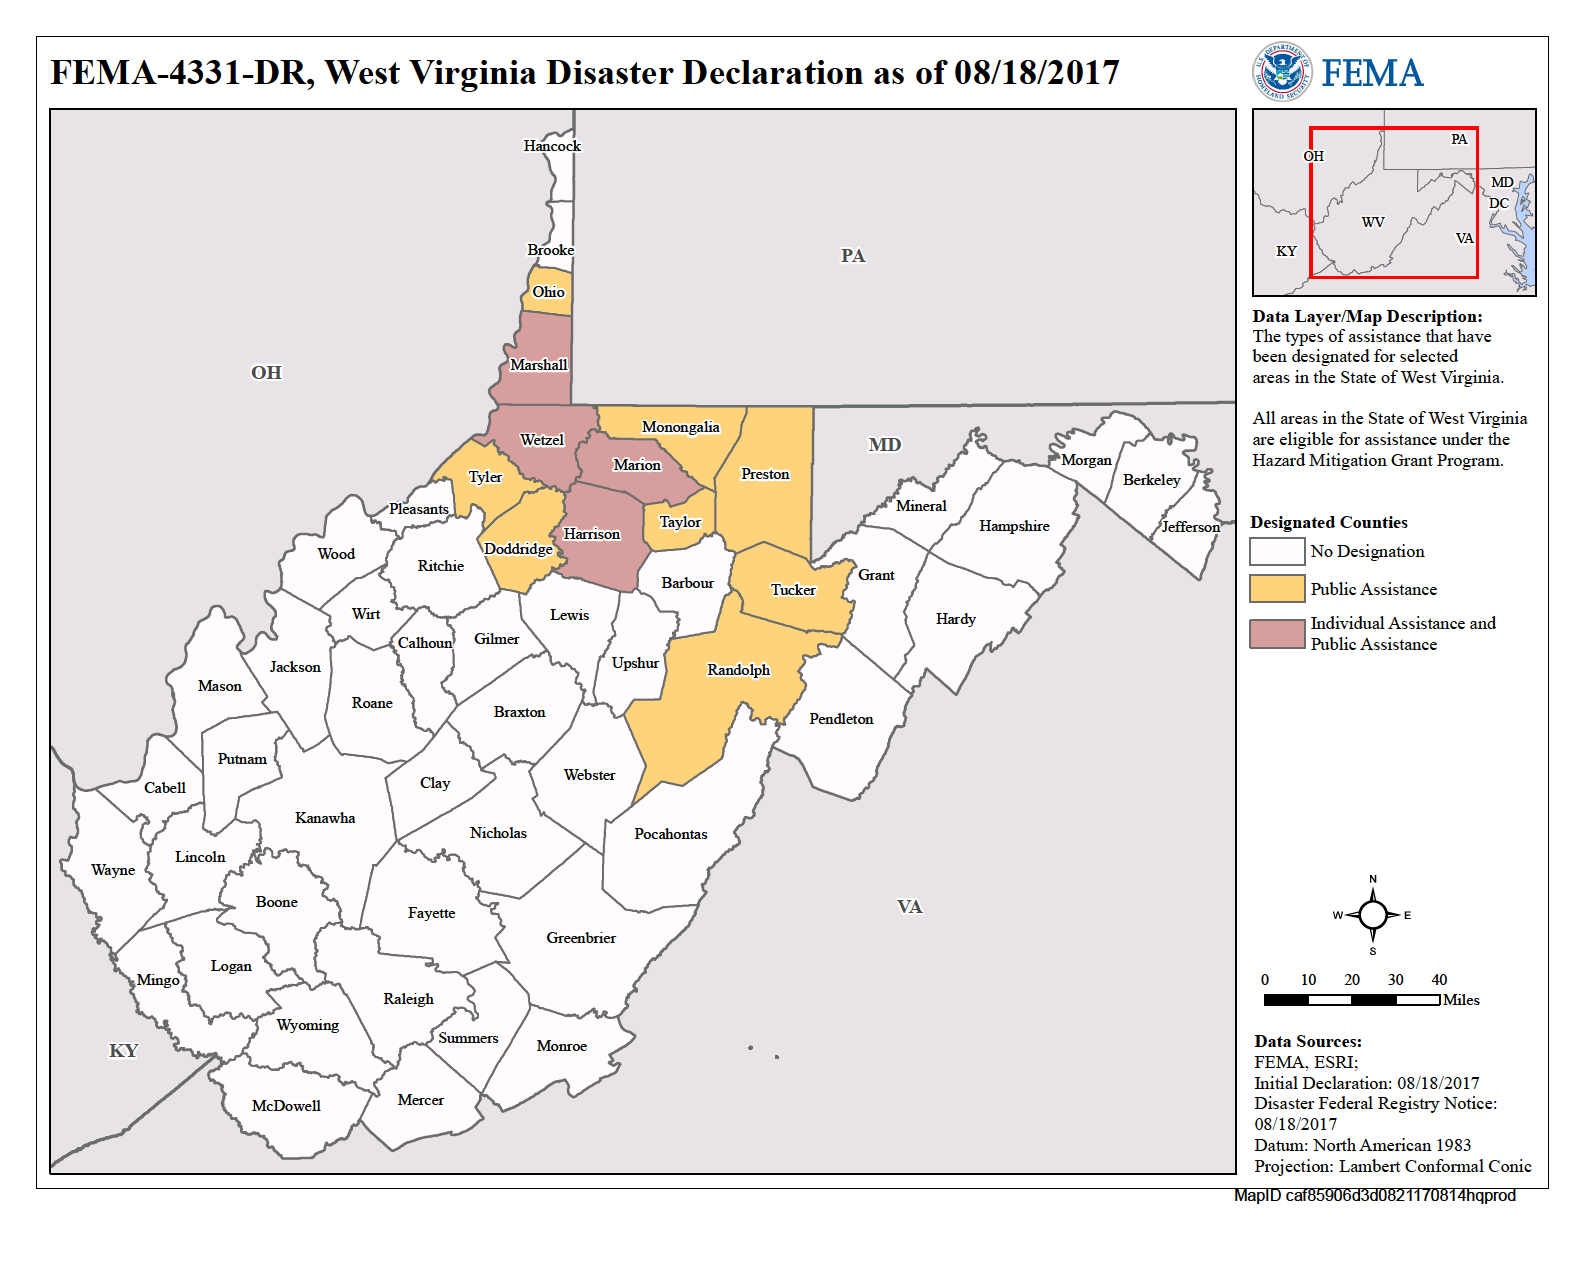 West Virginia Severe Storms Flooding Landslides And Mudslides DR 